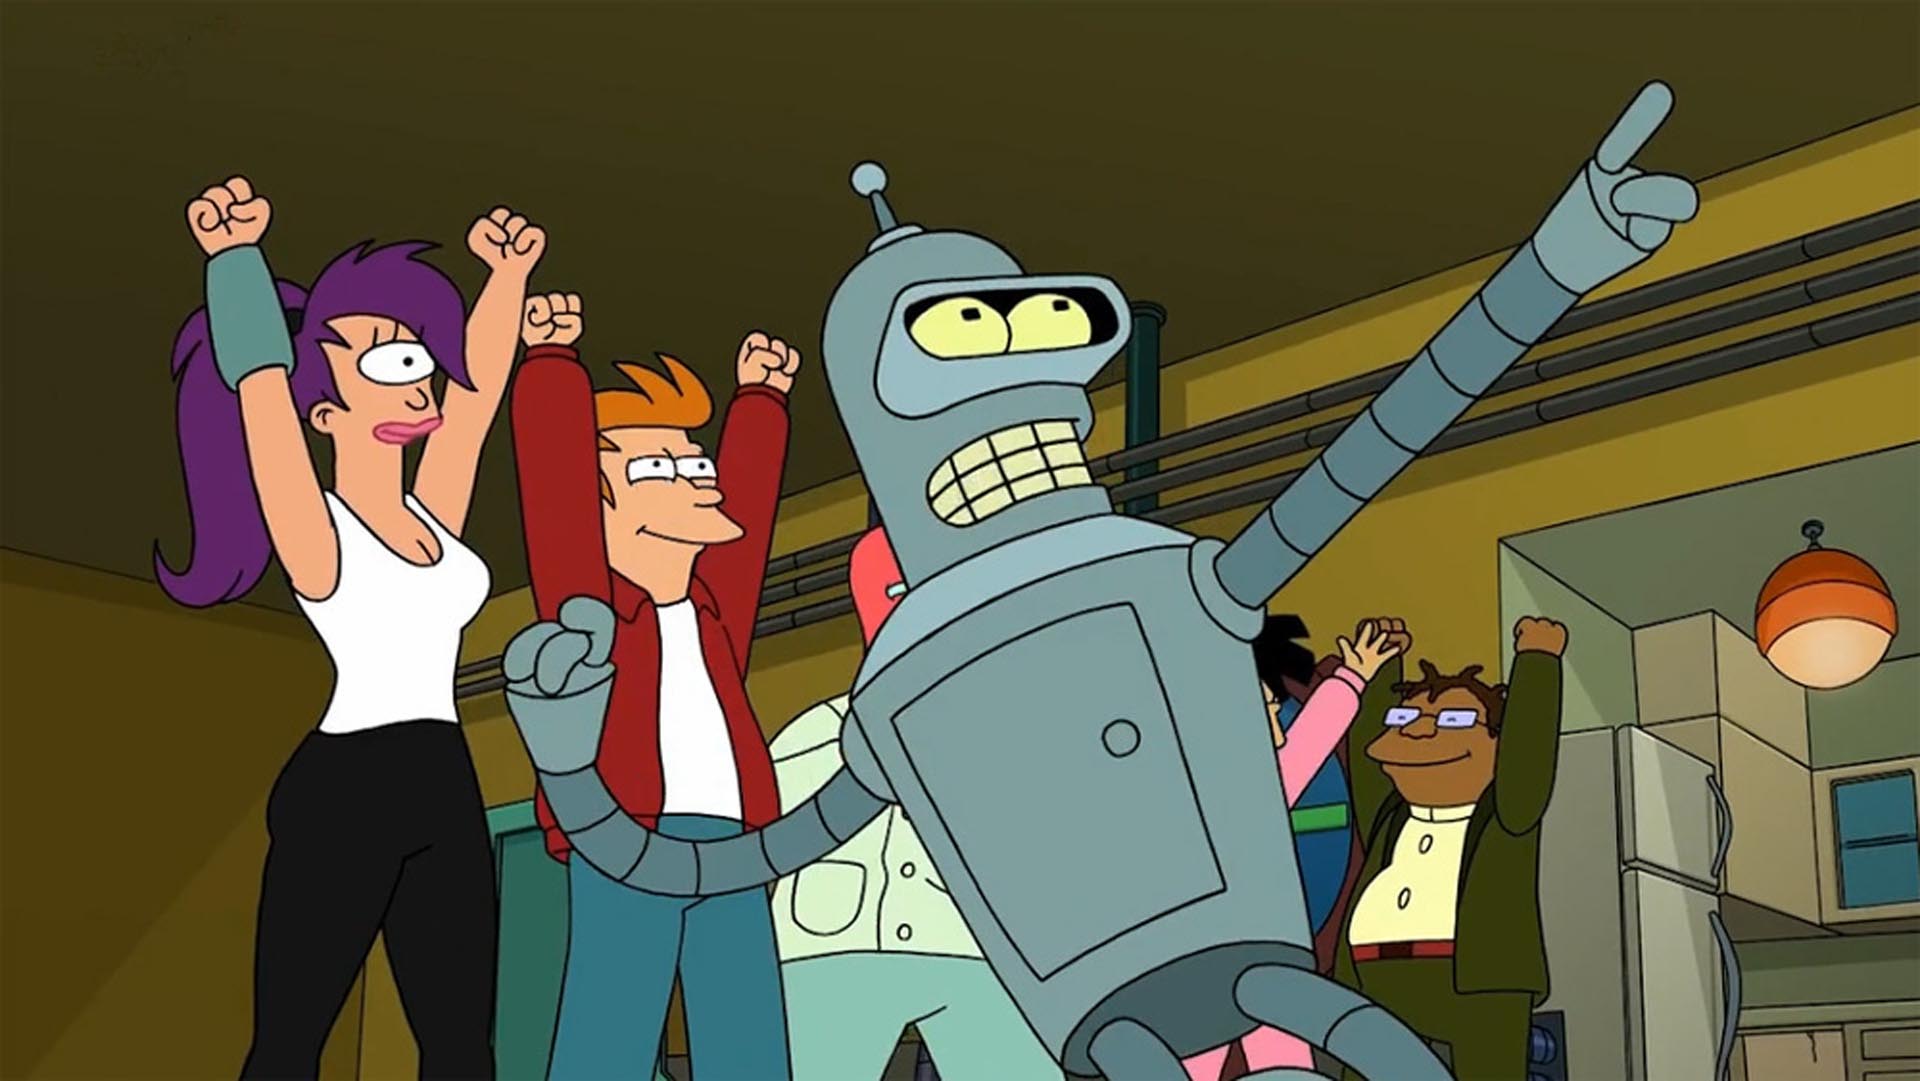 Vuelve “Futurama” después de 10 años: dónde se podrán ver los nuevos episodios